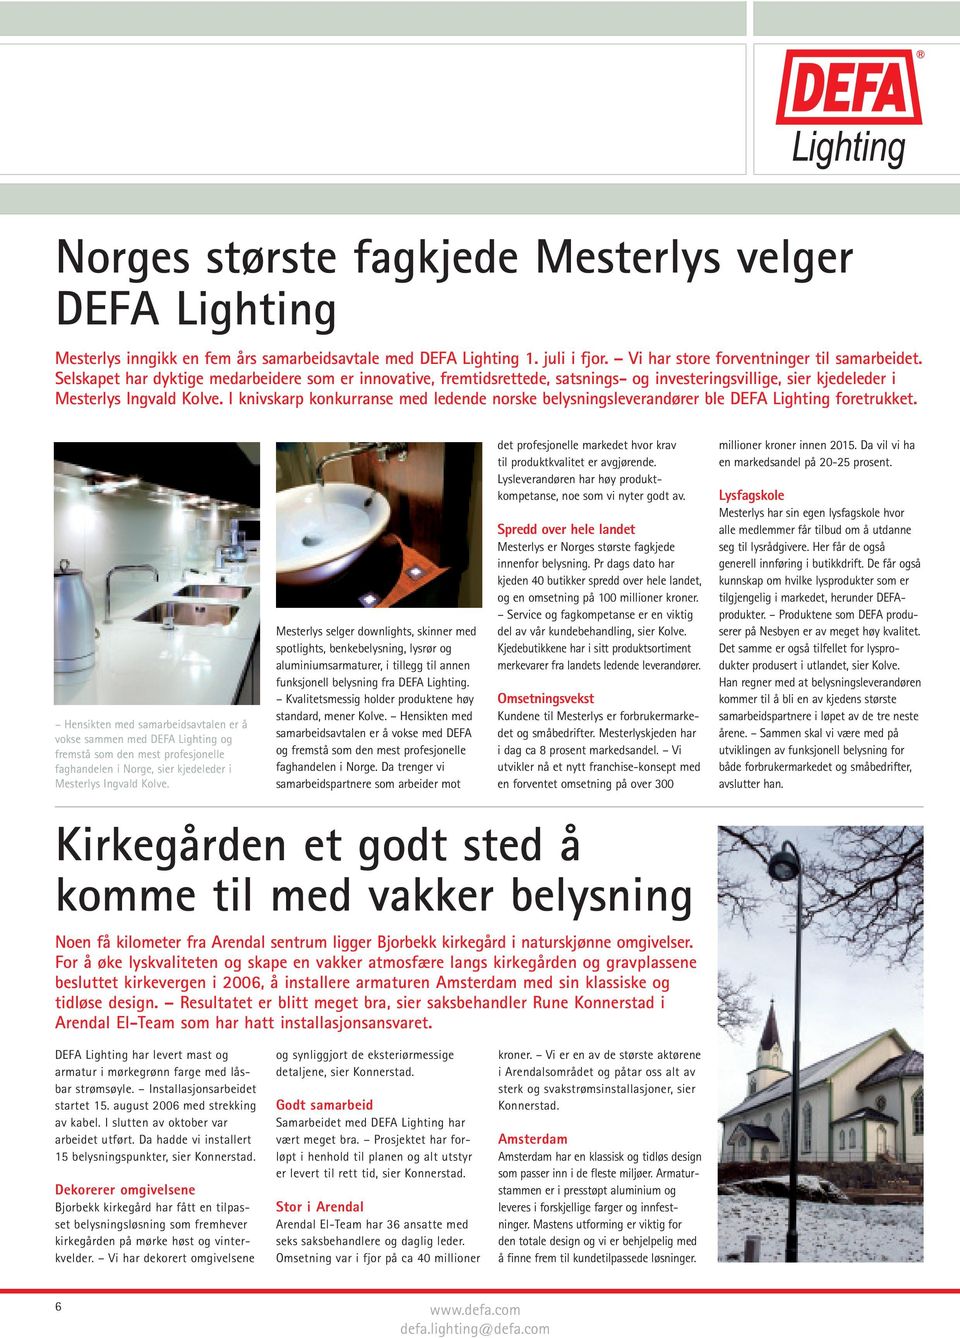 I knivskarp konkurranse med ledende norske belysningsleverandører ble DEFA Lighting foretrukket.